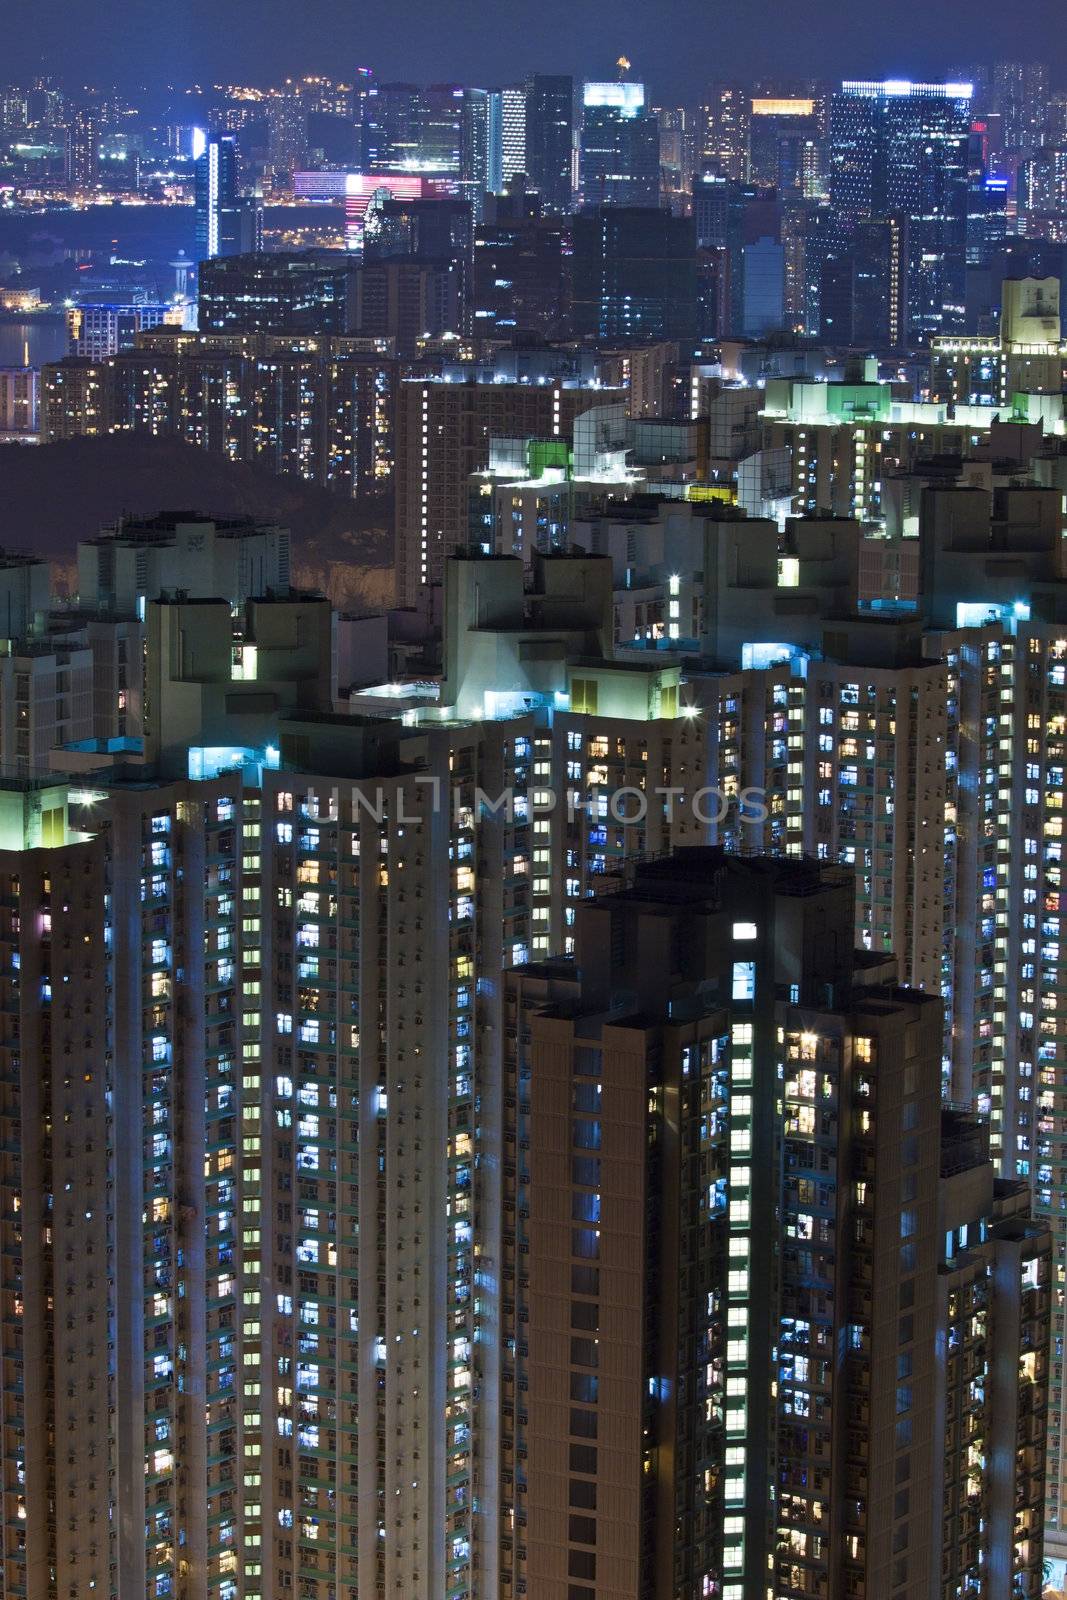 Hong Kong apartment blocks at night by kawing921